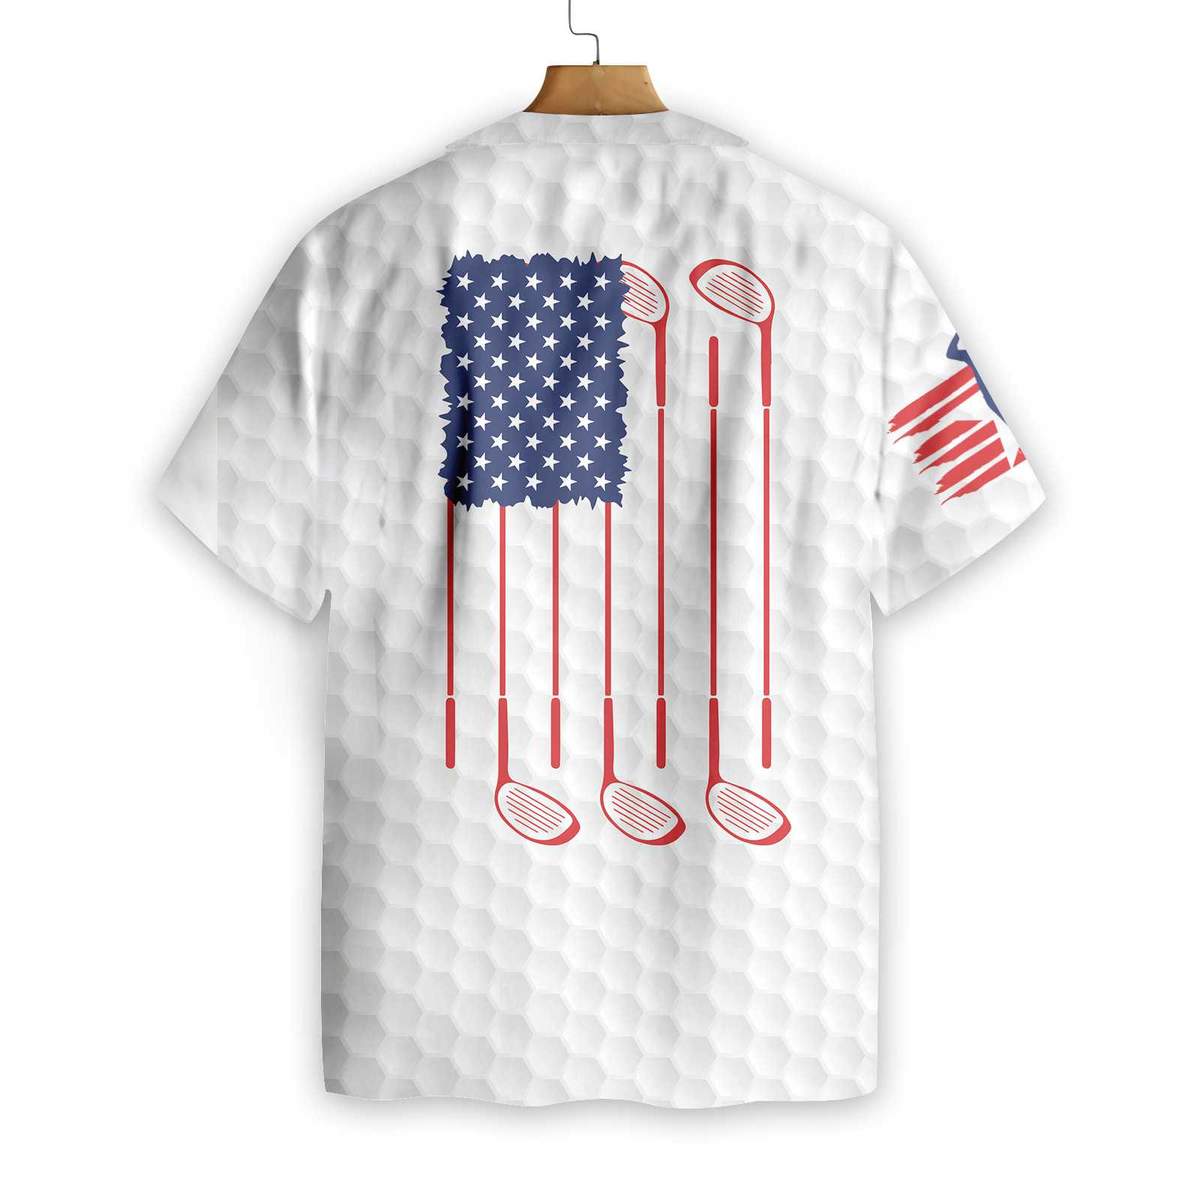 Golf American flag hawaiian shirt Back